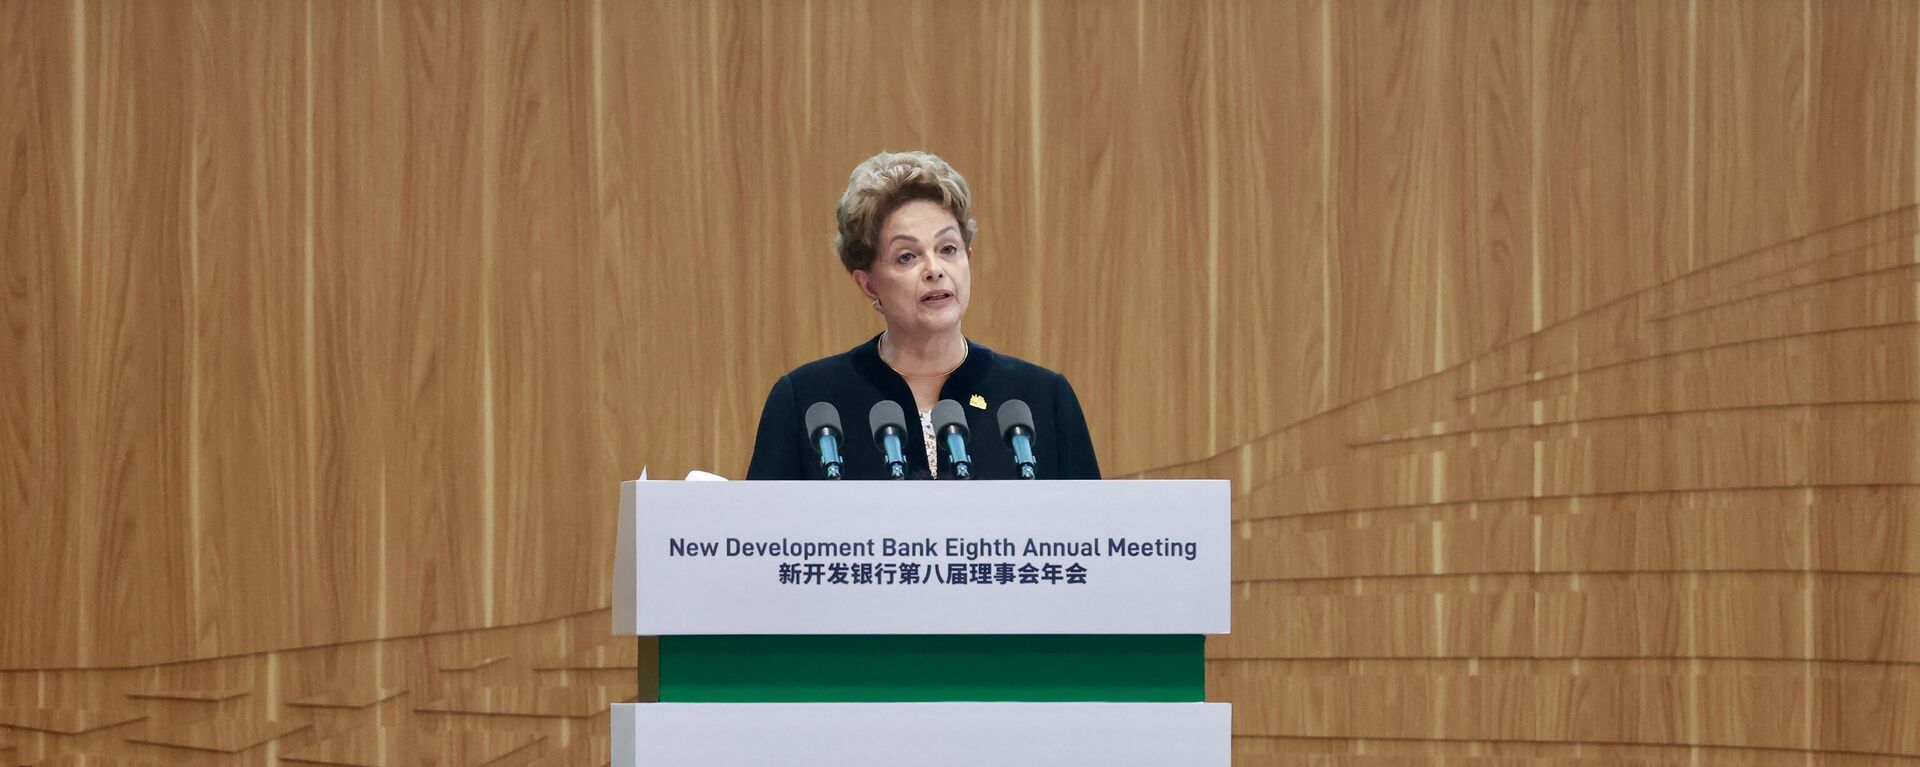 A presidente do Novo Banco de Desenvolvimento, Dilma Rousseff, discursa durante a cerimônia de abertura da Oitava Reunião Anual do Novo Banco de Desenvolvimento em Xangai, 30 de maio de 2023 - Sputnik Brasil, 1920, 30.05.2023